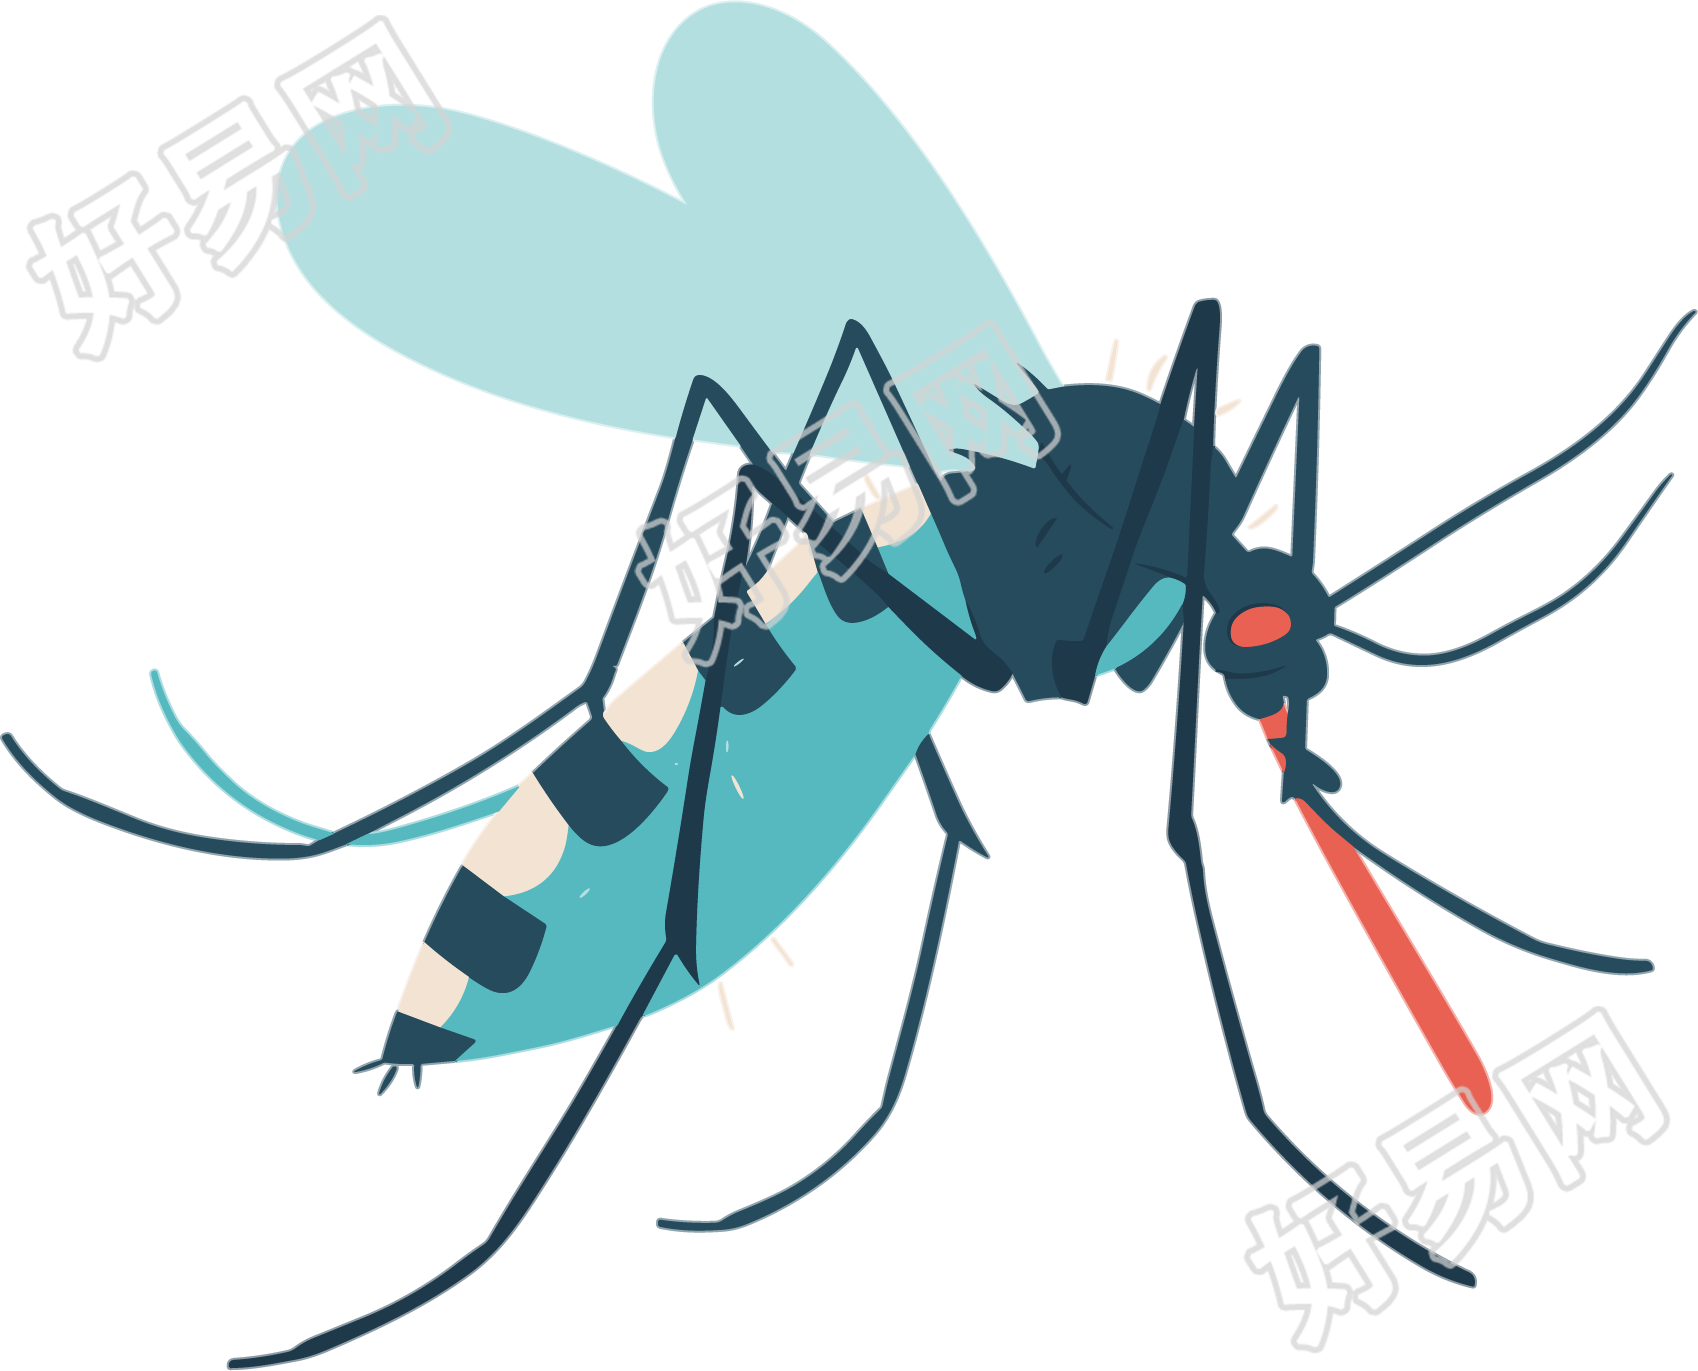 昆虫蚊子平面插画素材